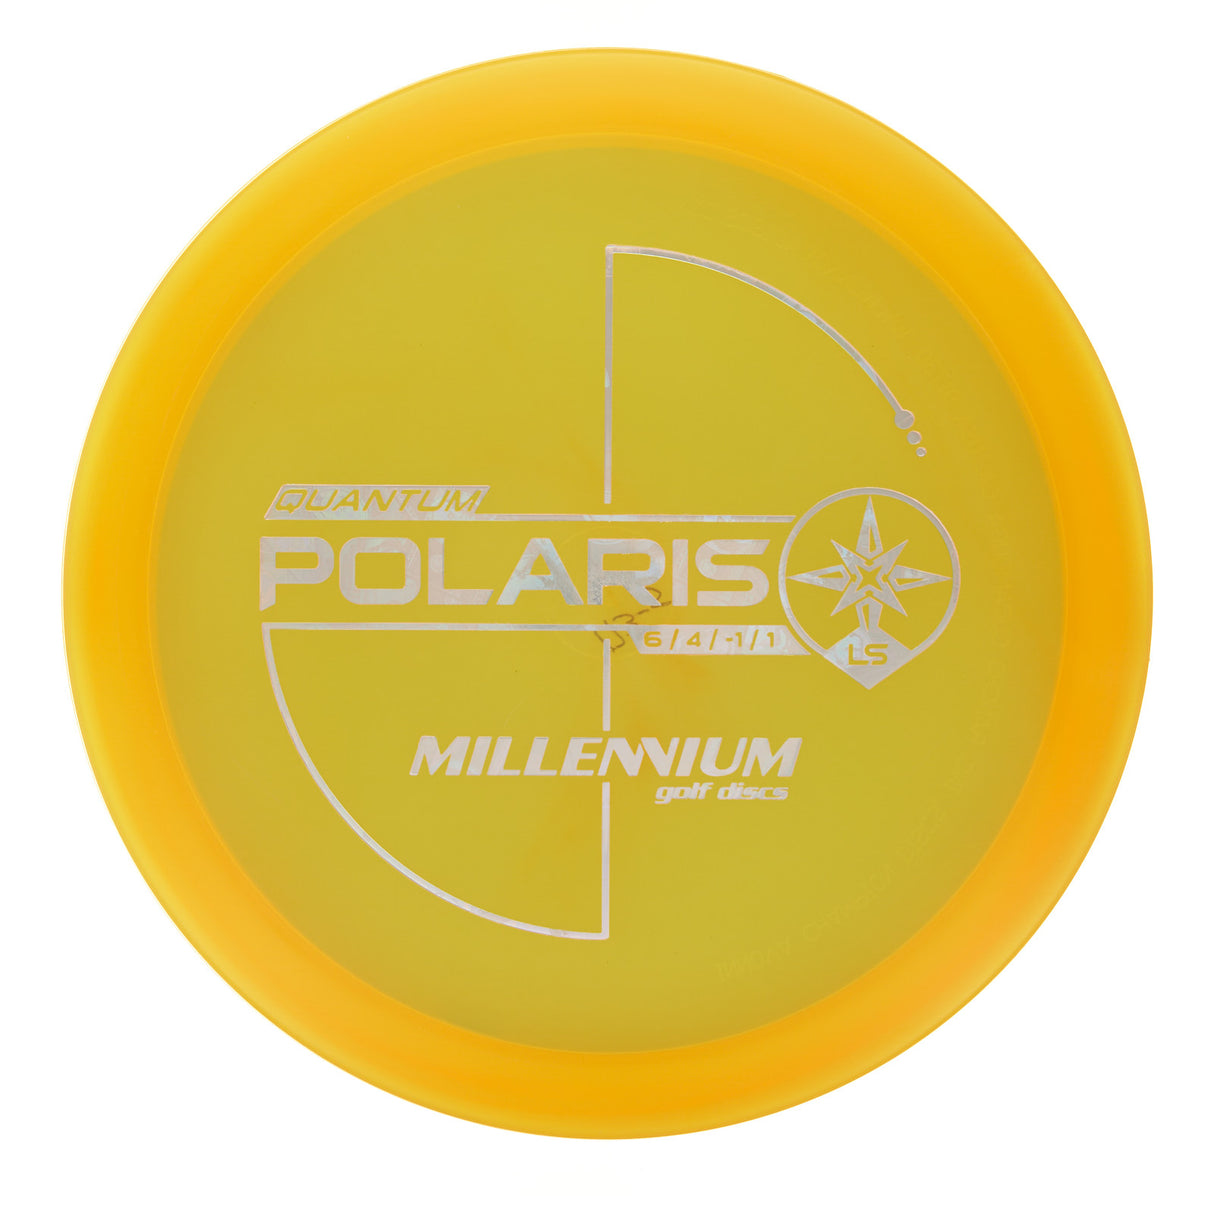 Millennium Polaris LS - Quantum 174g | Style 0001